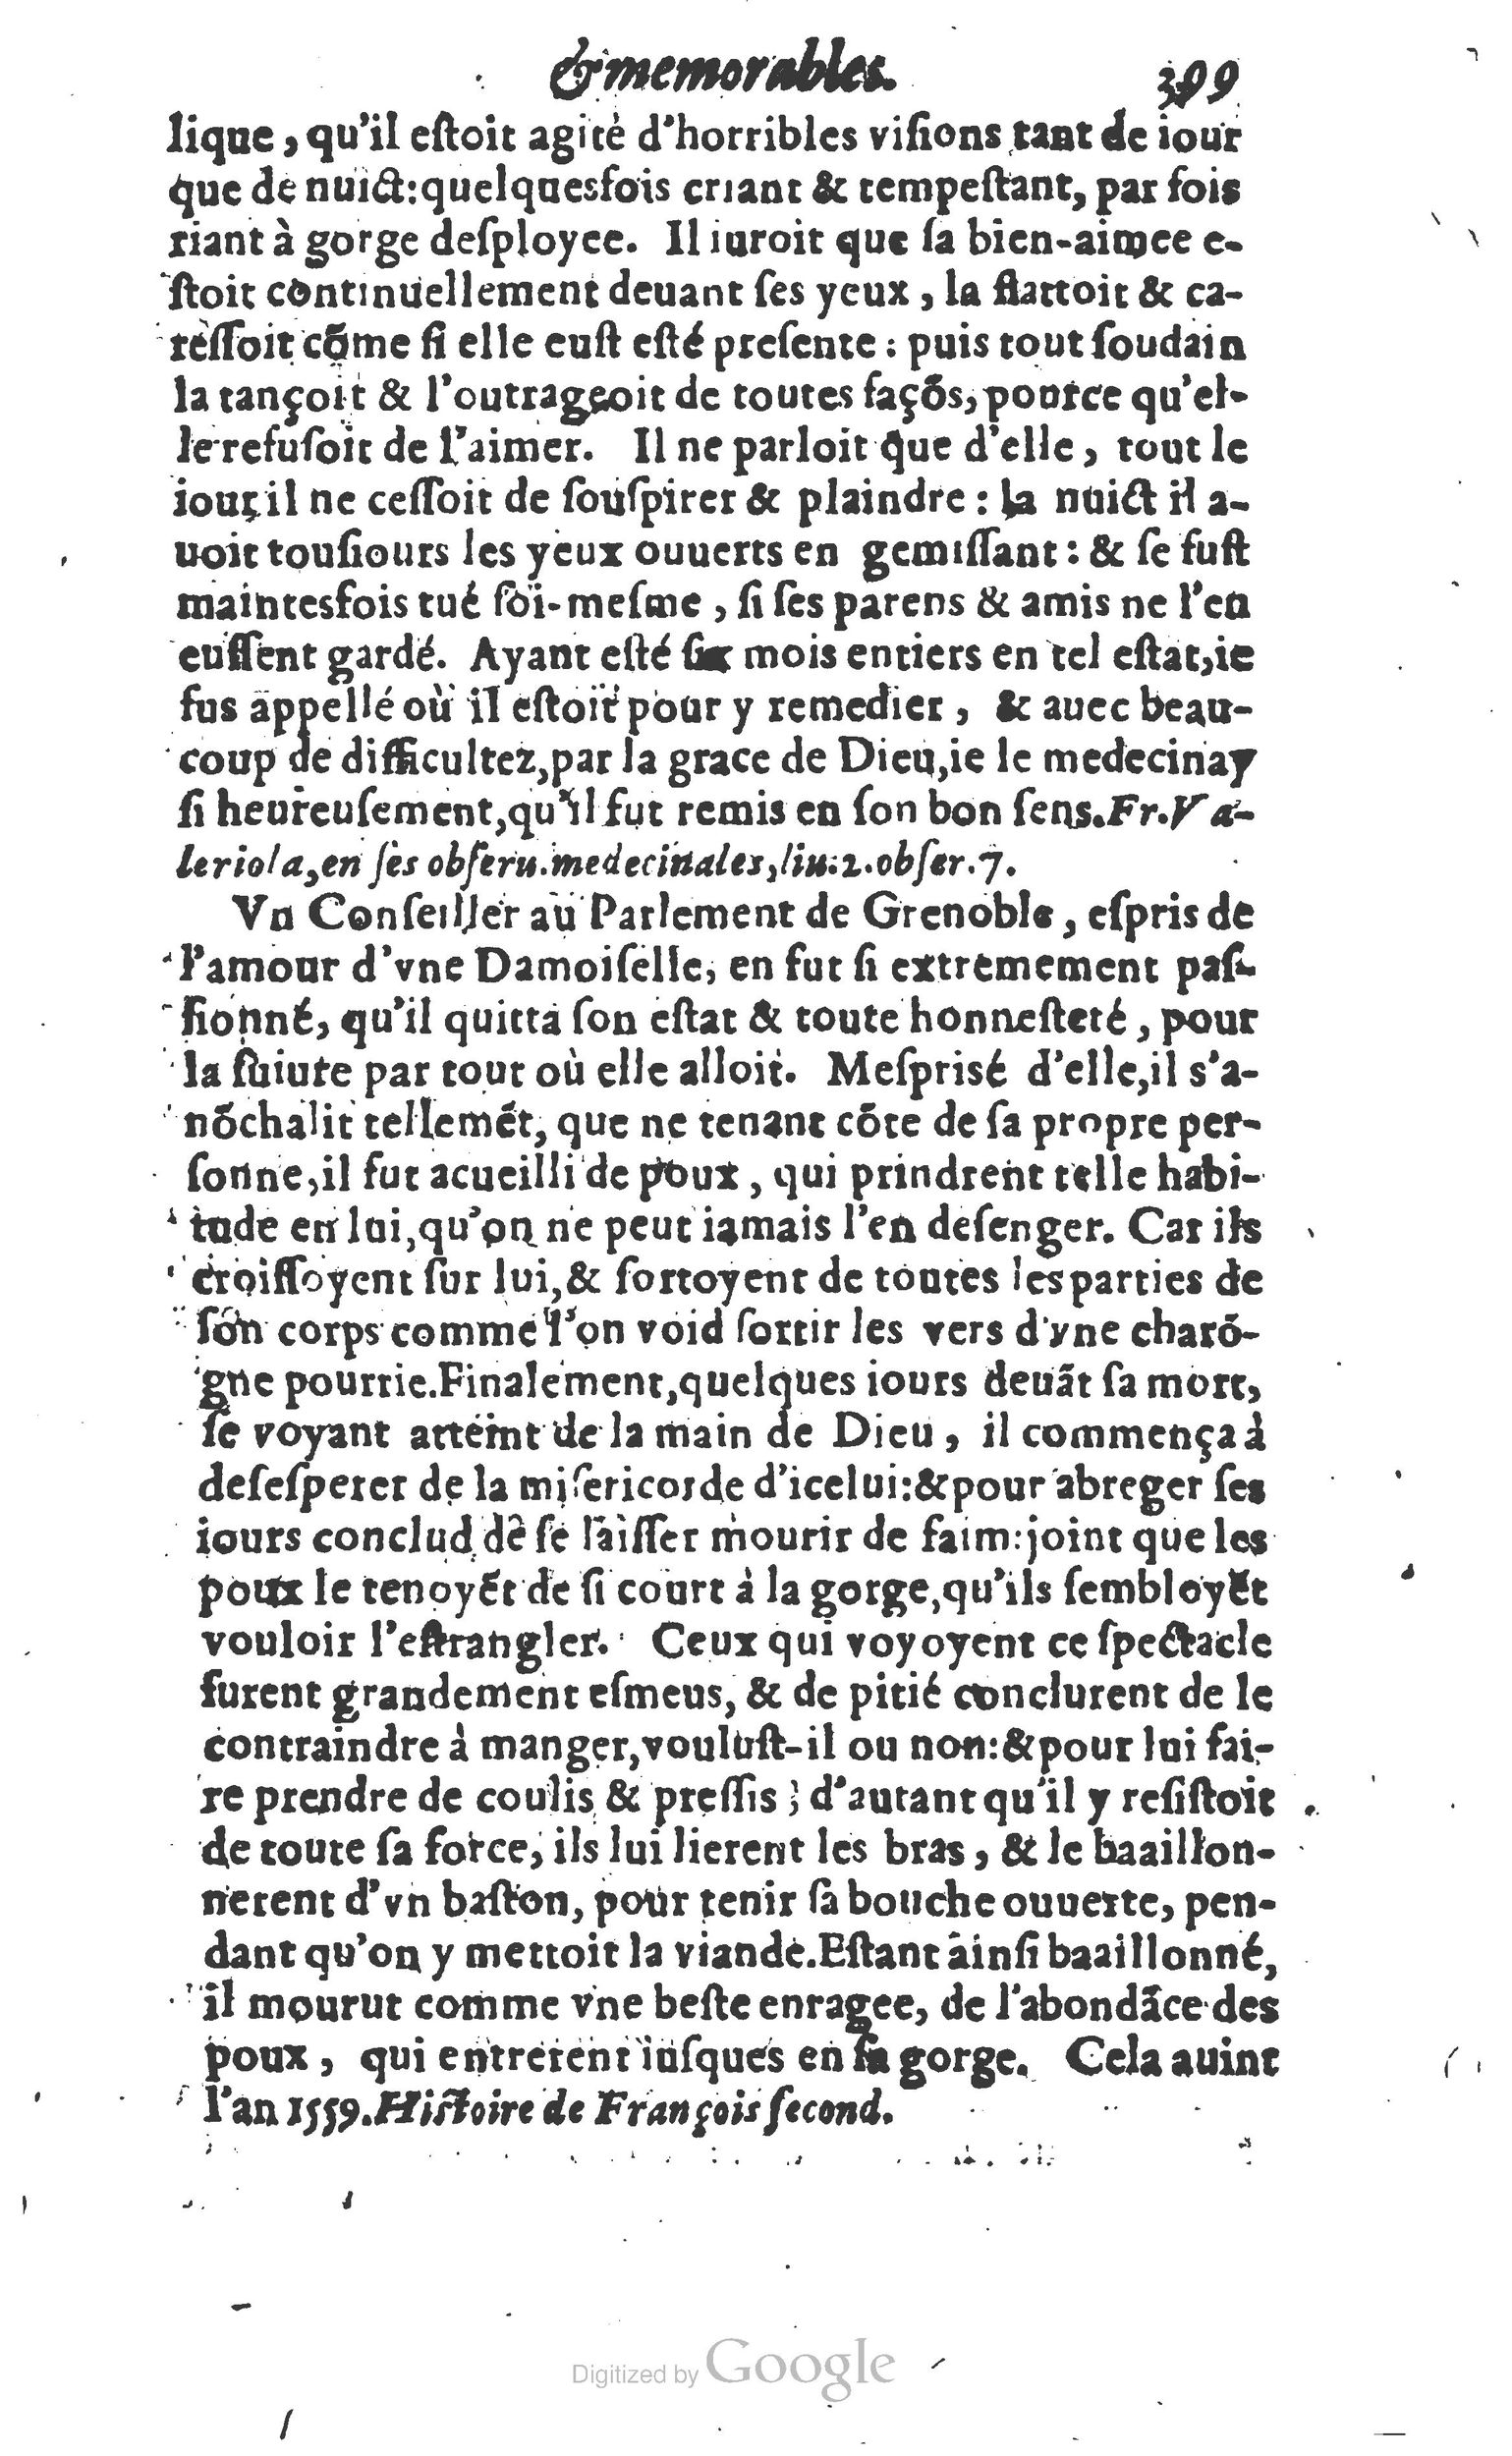 1610 Trésor d’histoires admirables et mémorables de nostre temps Marceau Princeton_Page_0420.jpg